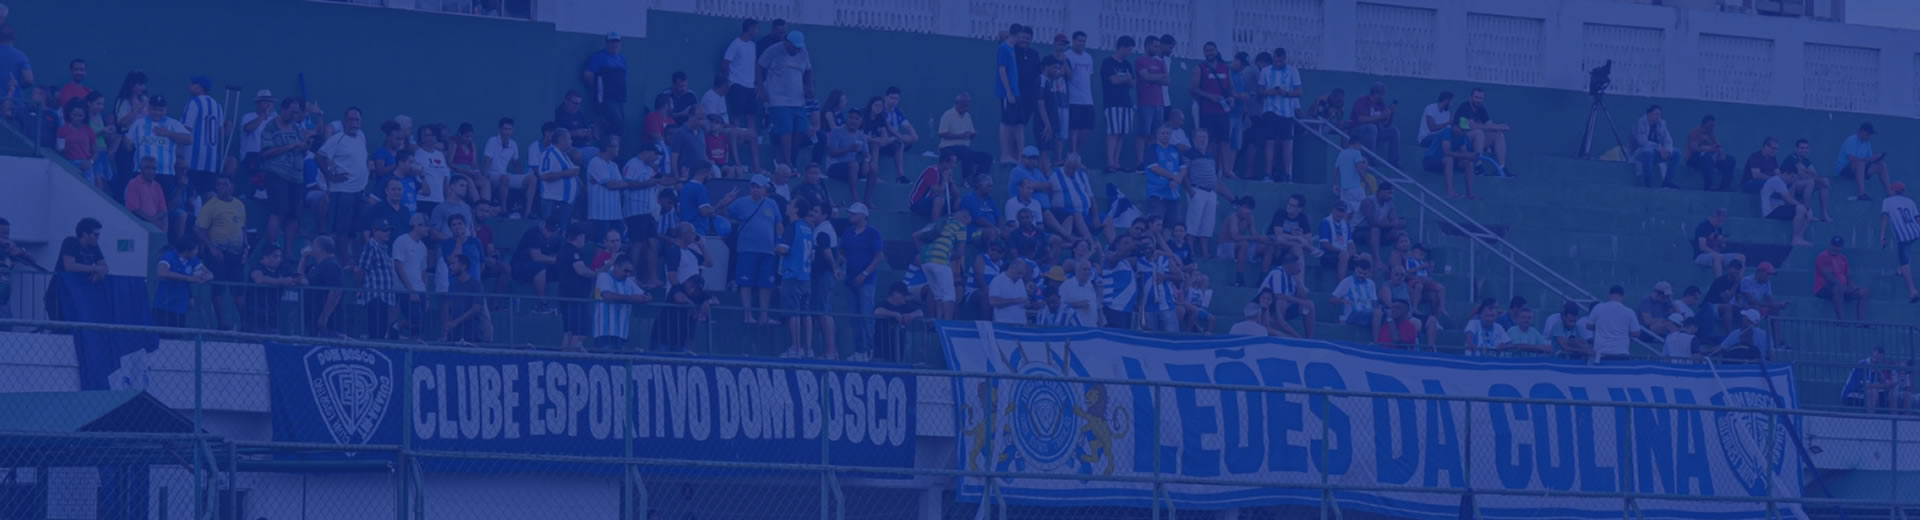 Clube Esportivo Dom Bosco